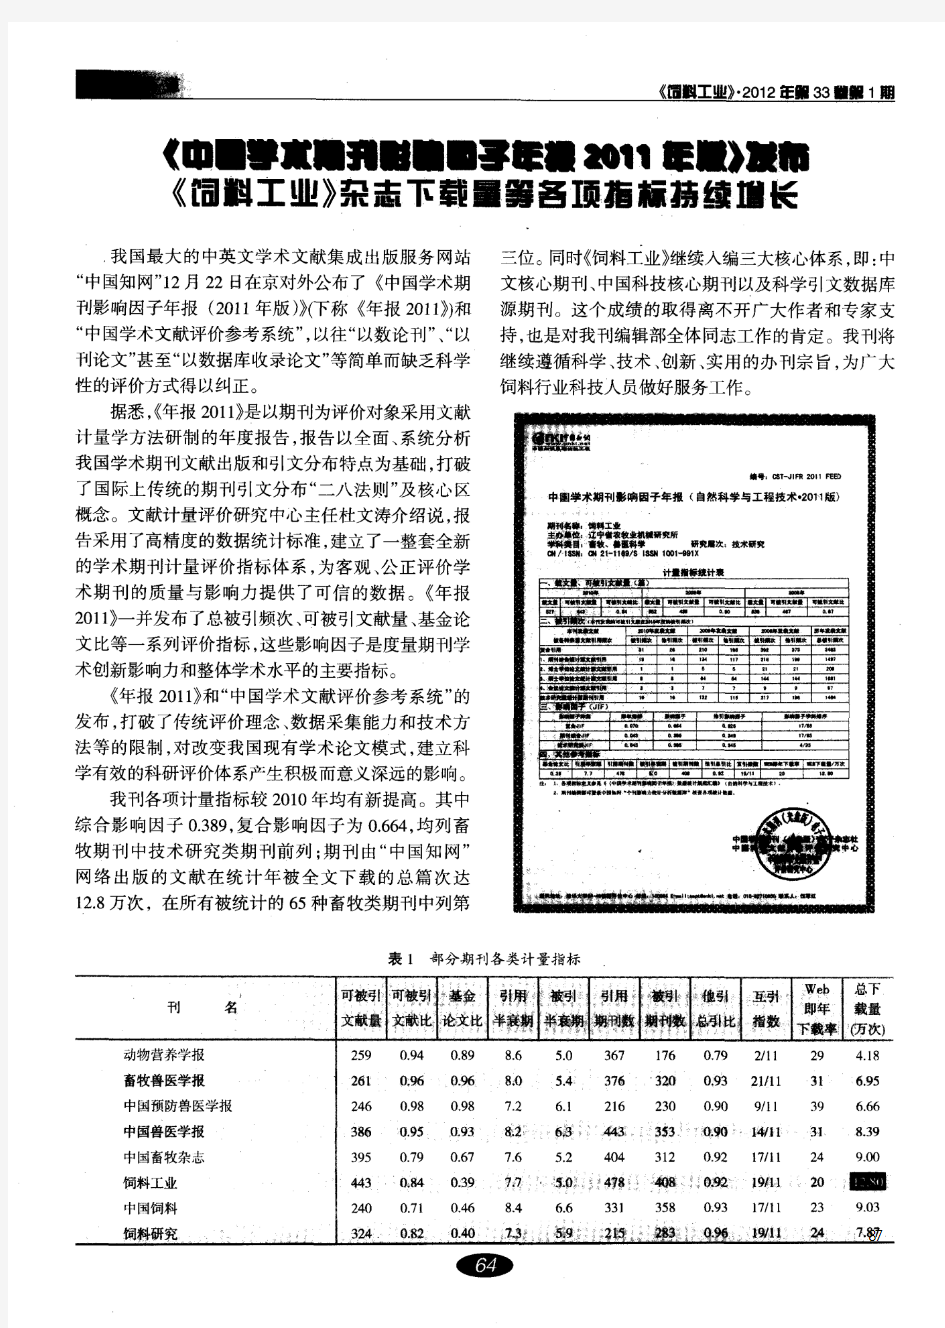 《中国学术期刊影响因子年报2011年版》发布《饲料工业》杂志下载量等各项指标持续增长